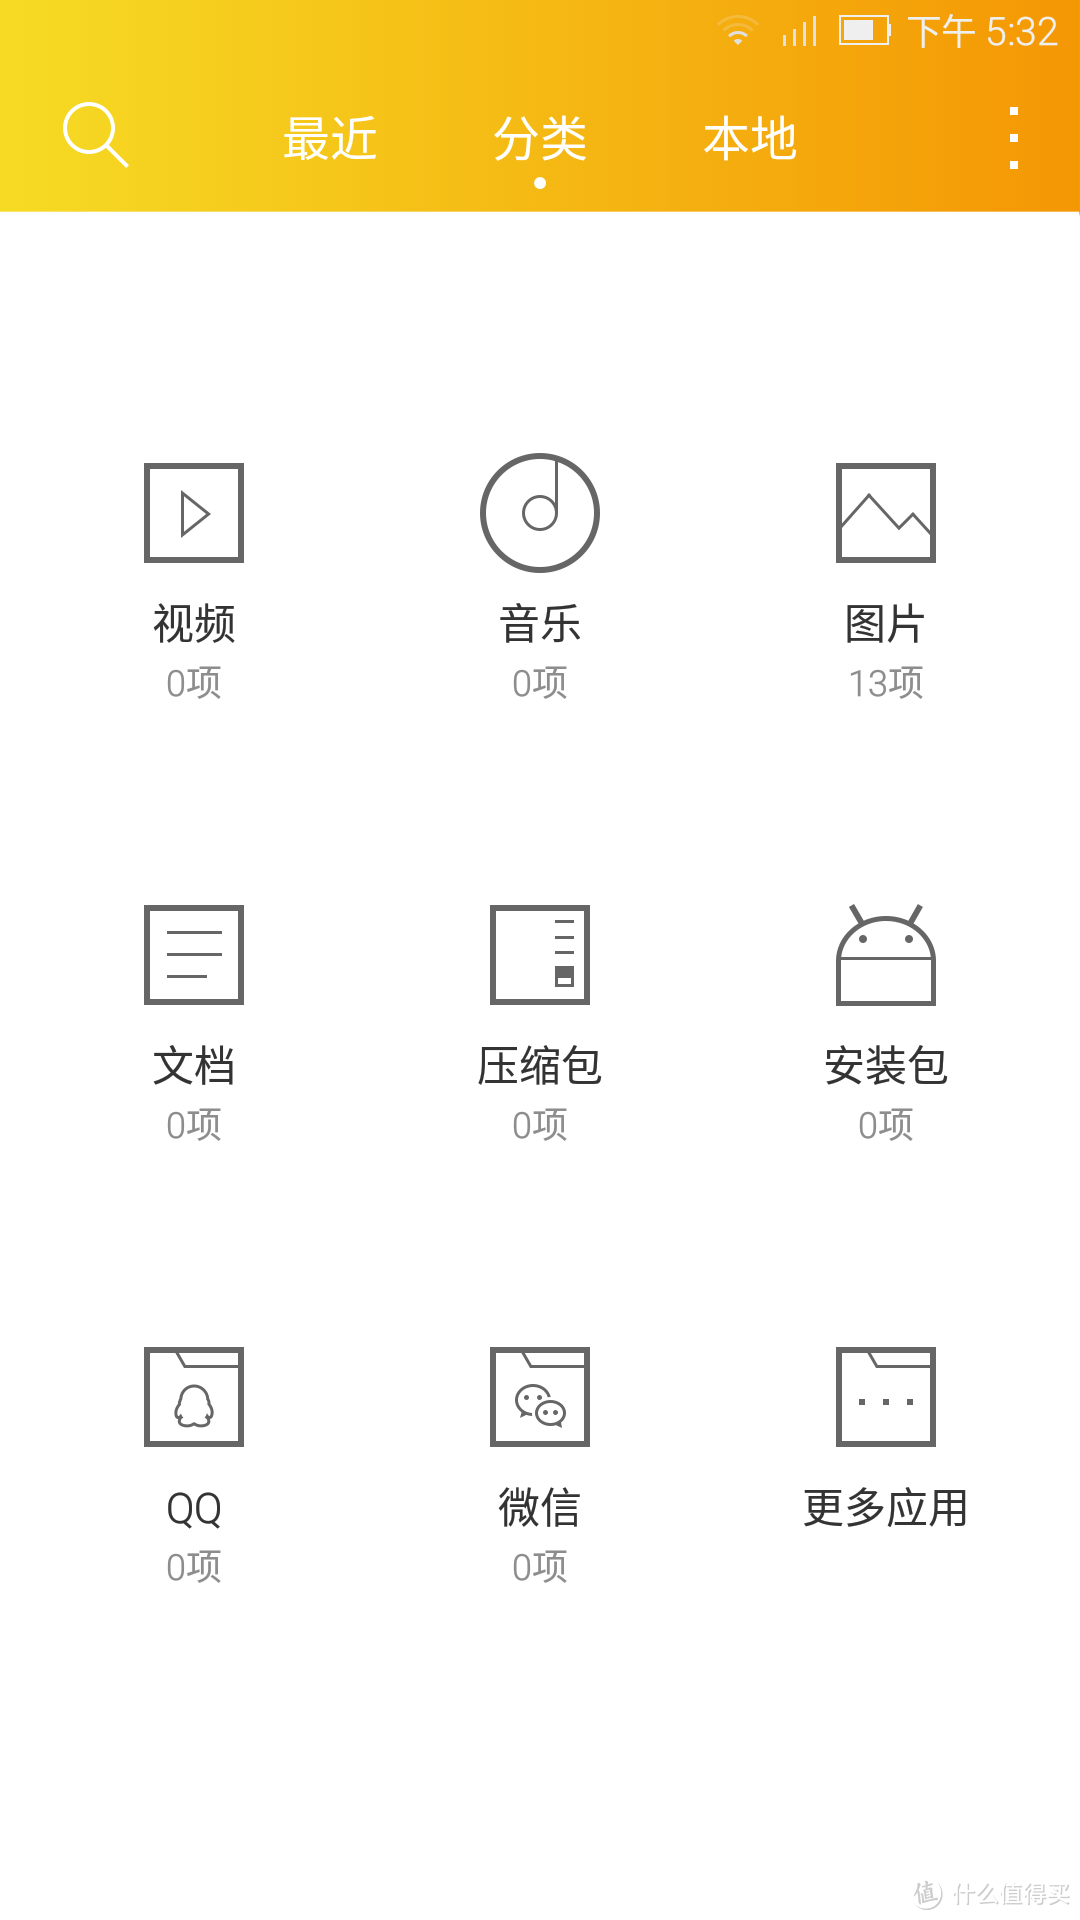 #本站首晒# InFocus 富可视 蓝鲸S1 — Tencent OS 2.0的使用体验